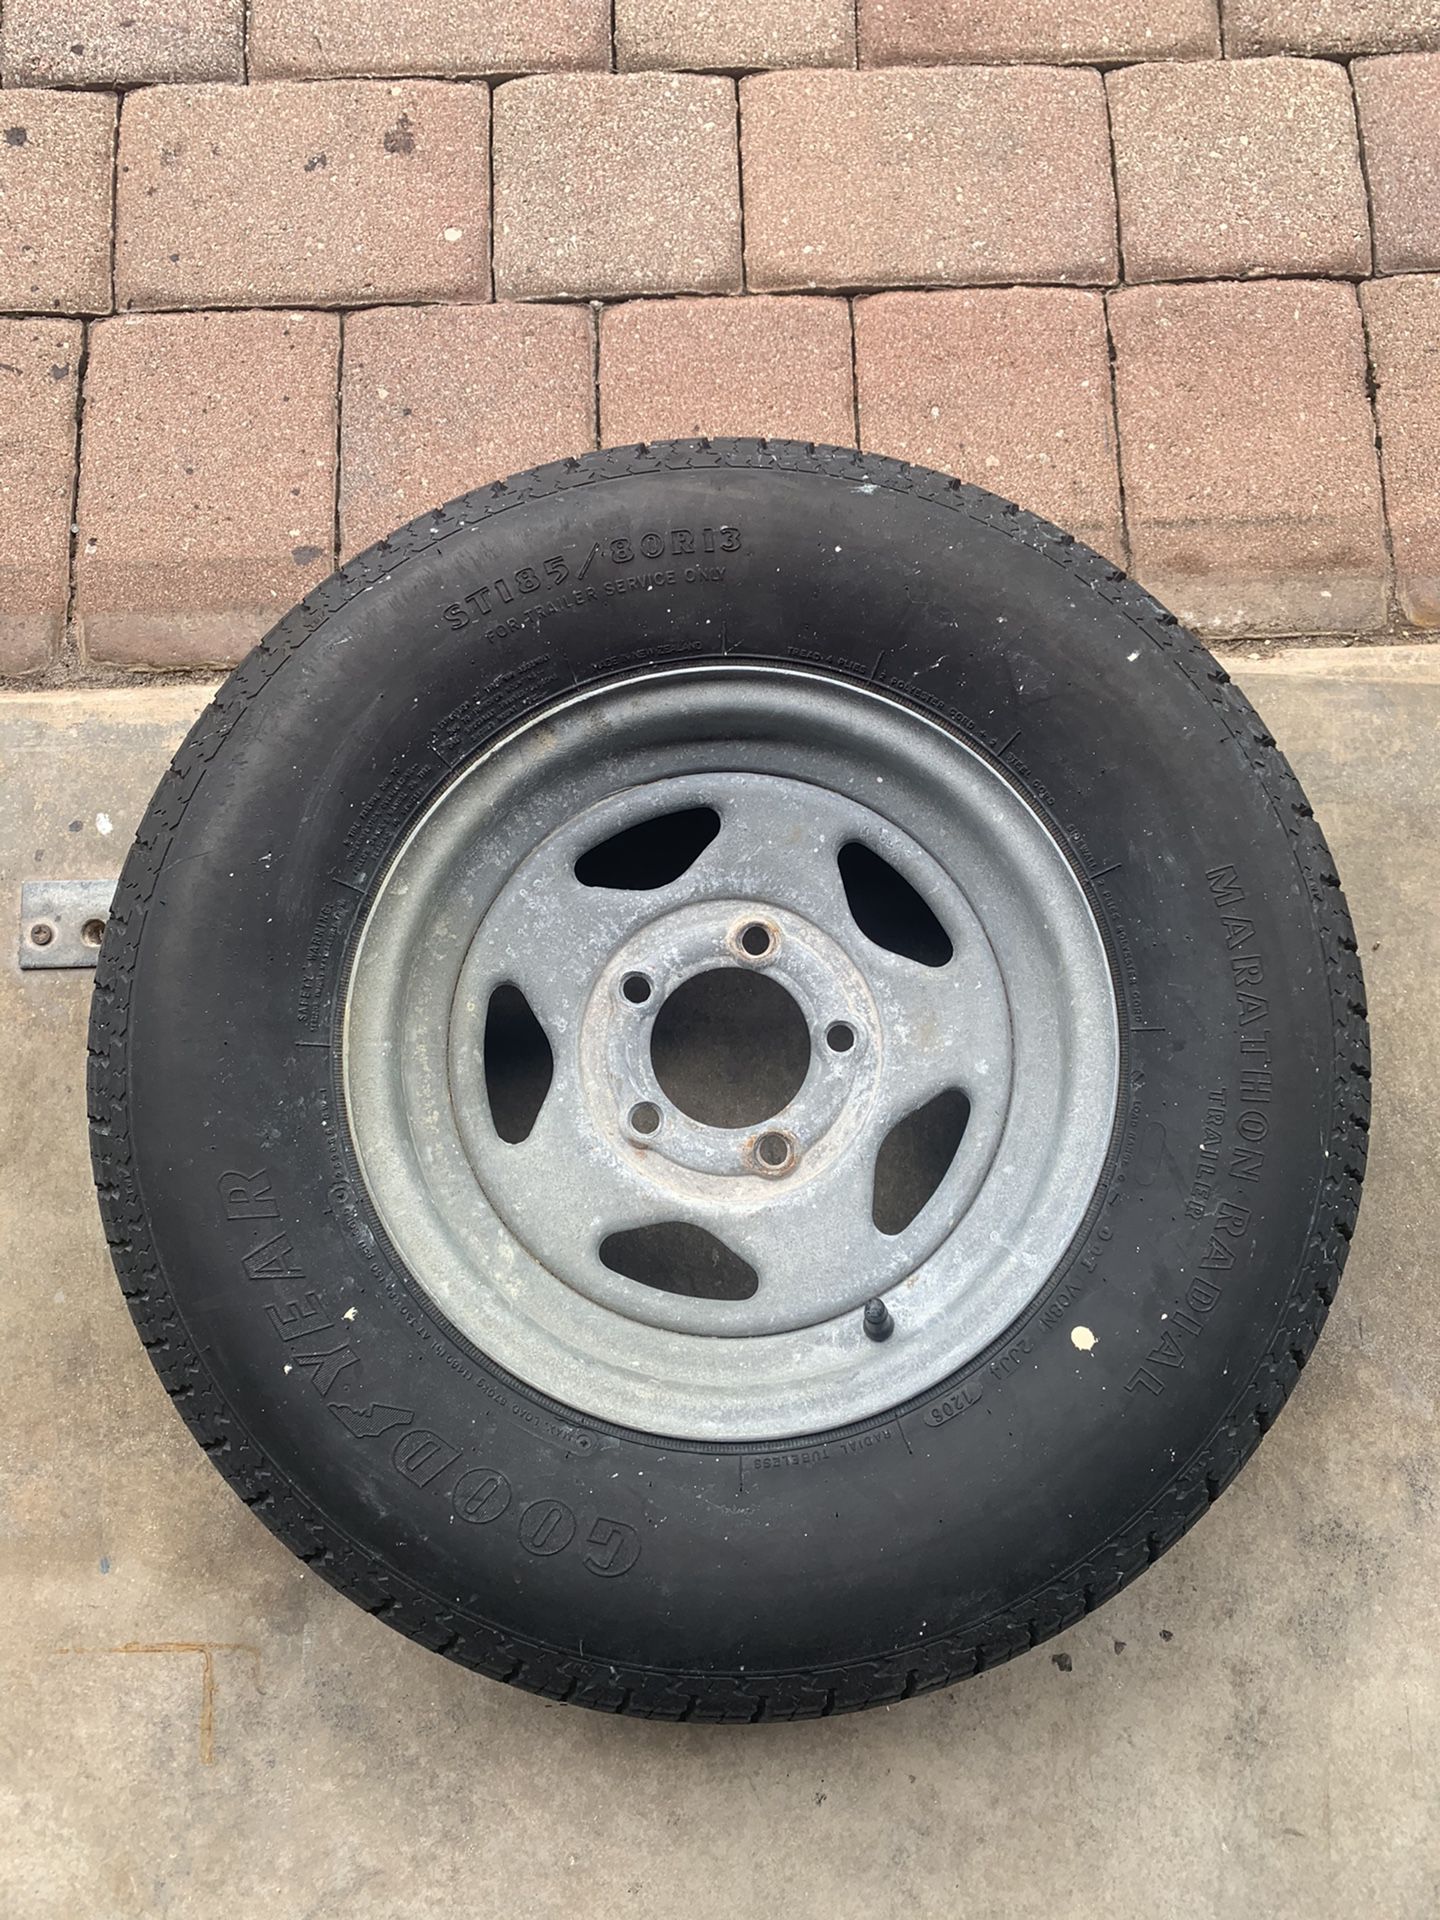 25inch trailer tire